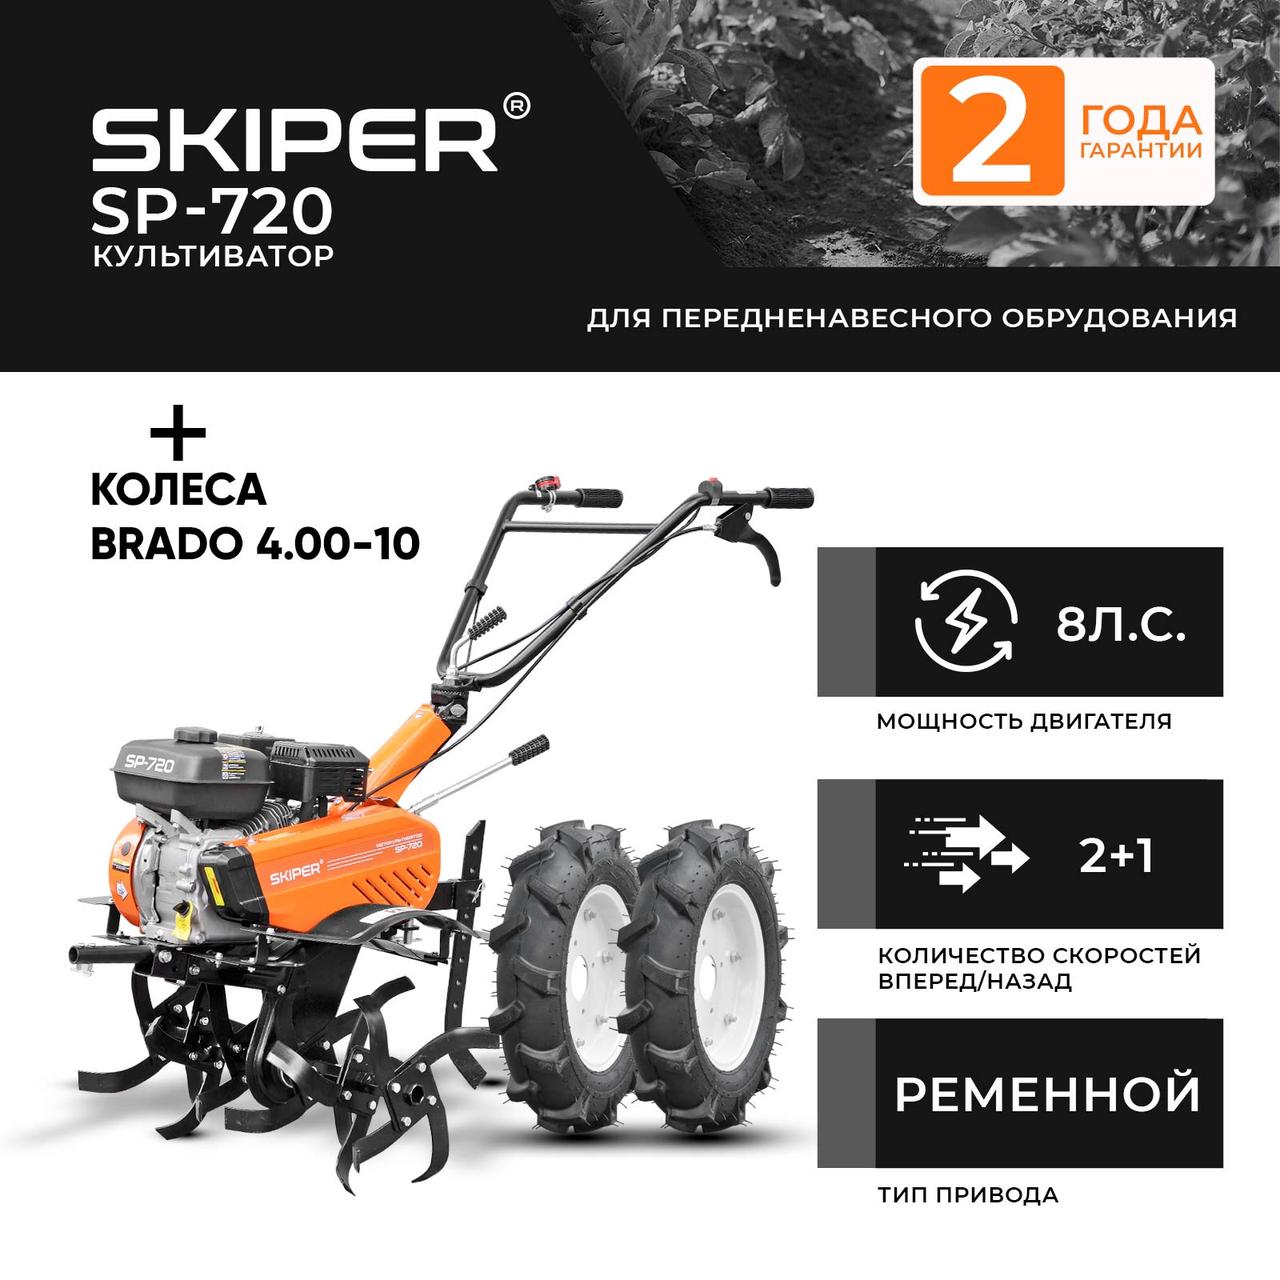 Культиватор SKIPER SP-720 + колеса BRADO 4.00-10  (комплект)